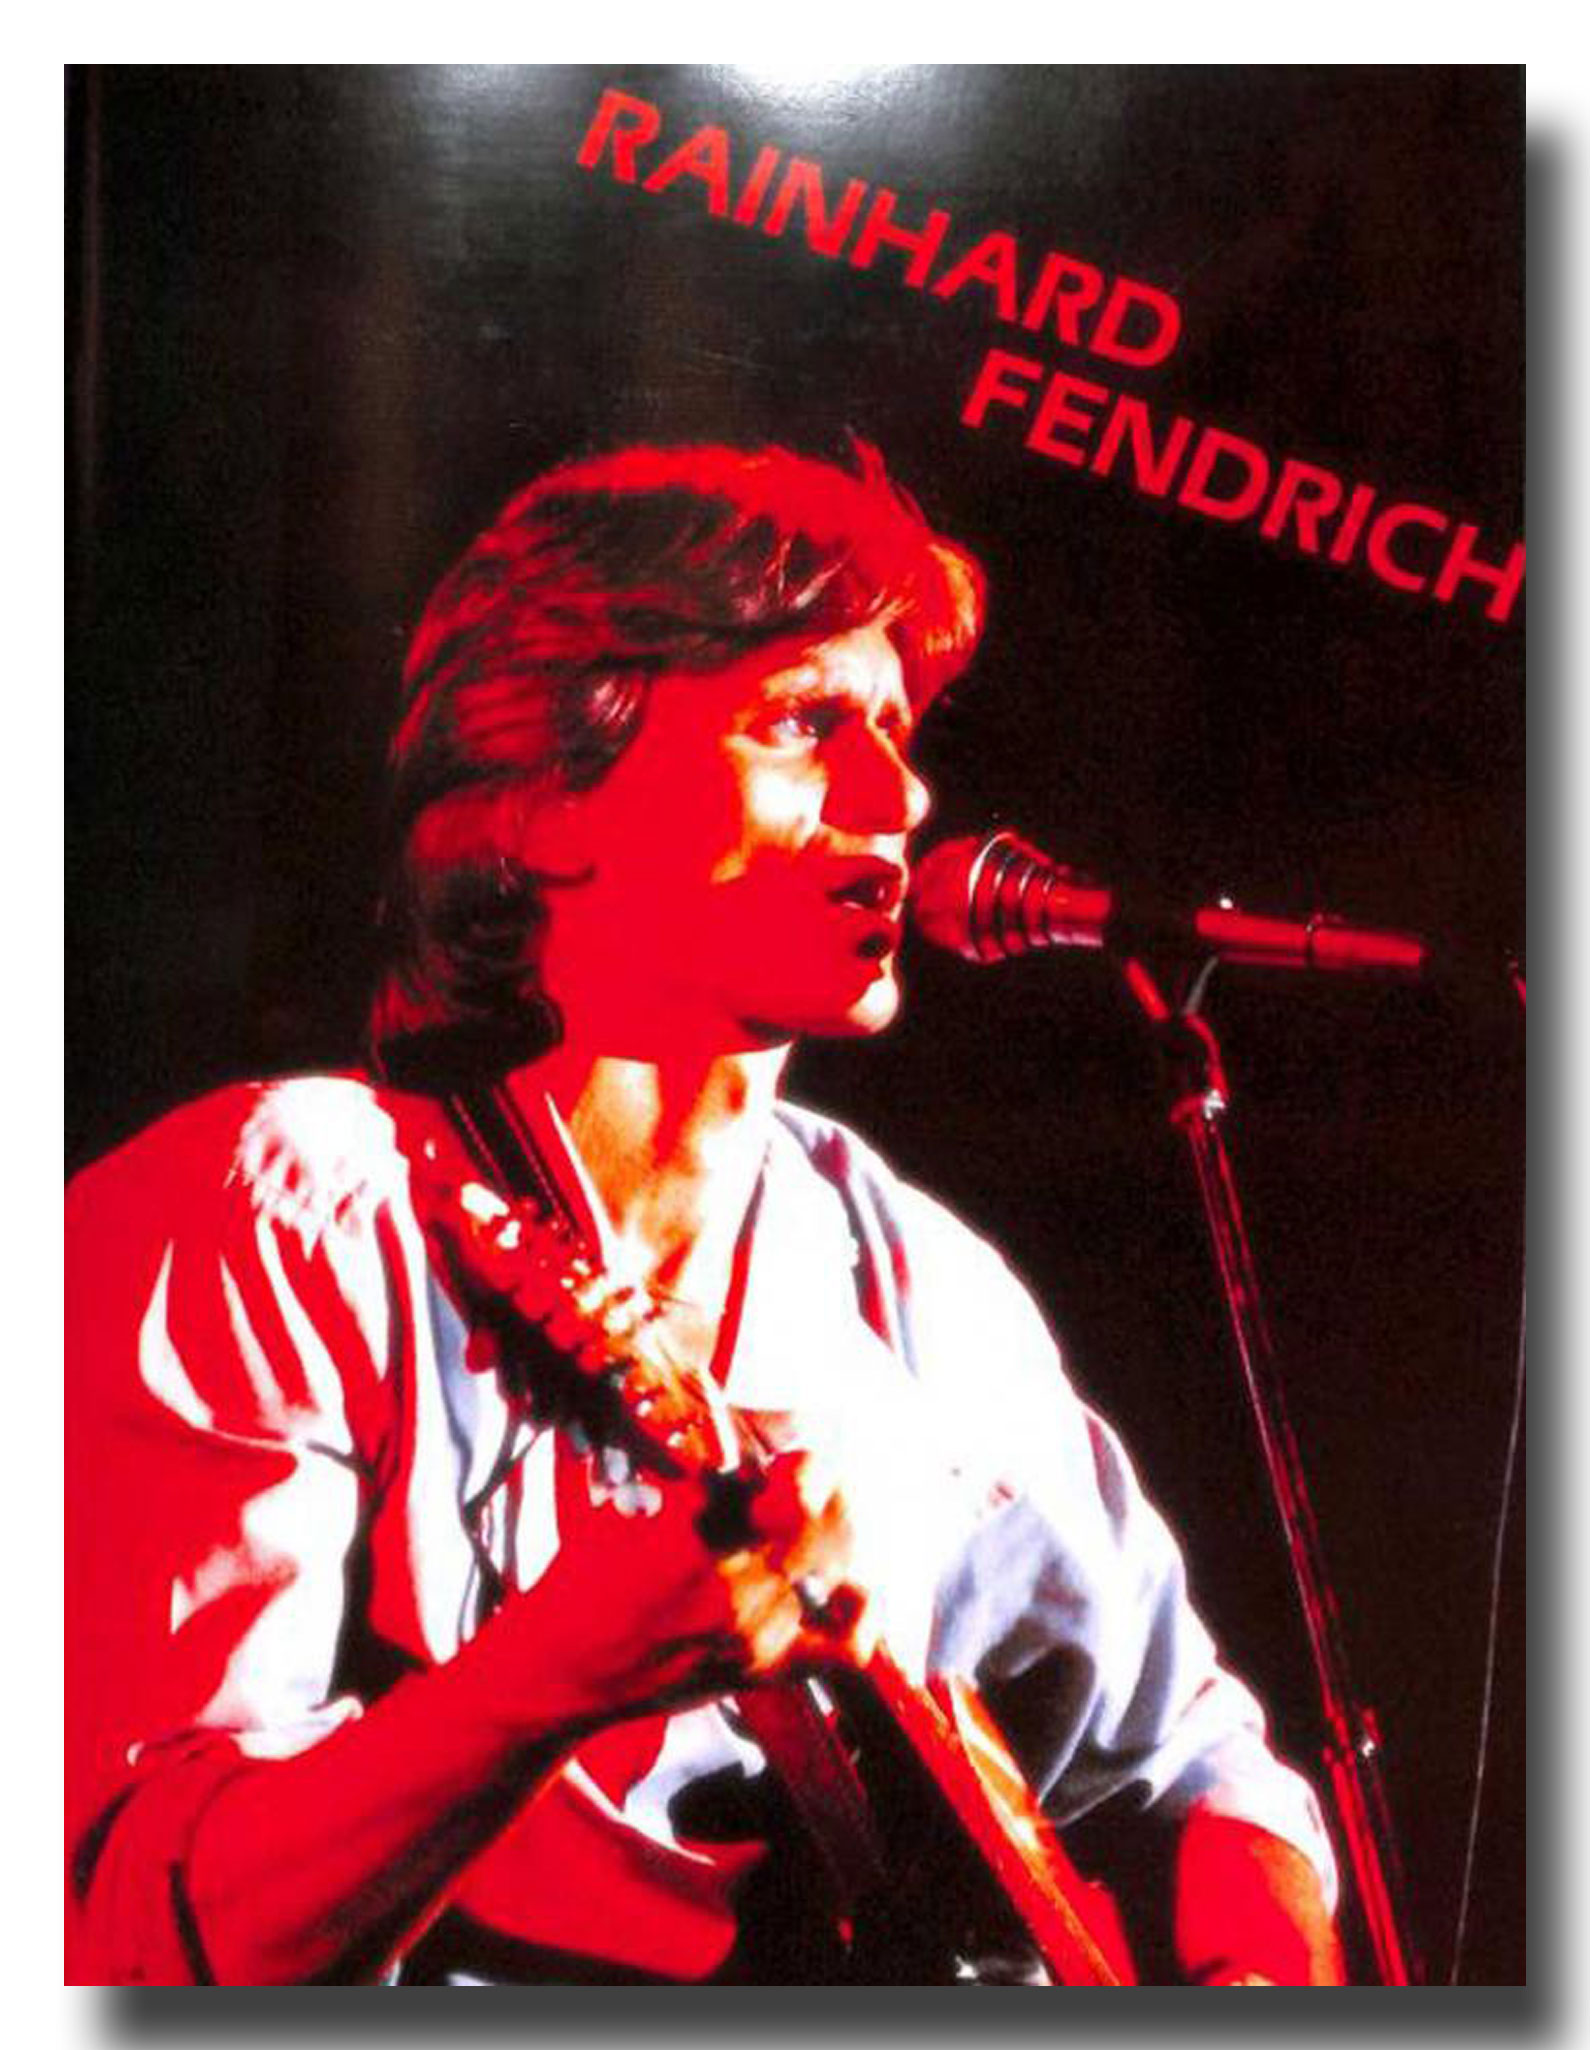 Reinhard Fendrich - Band 2